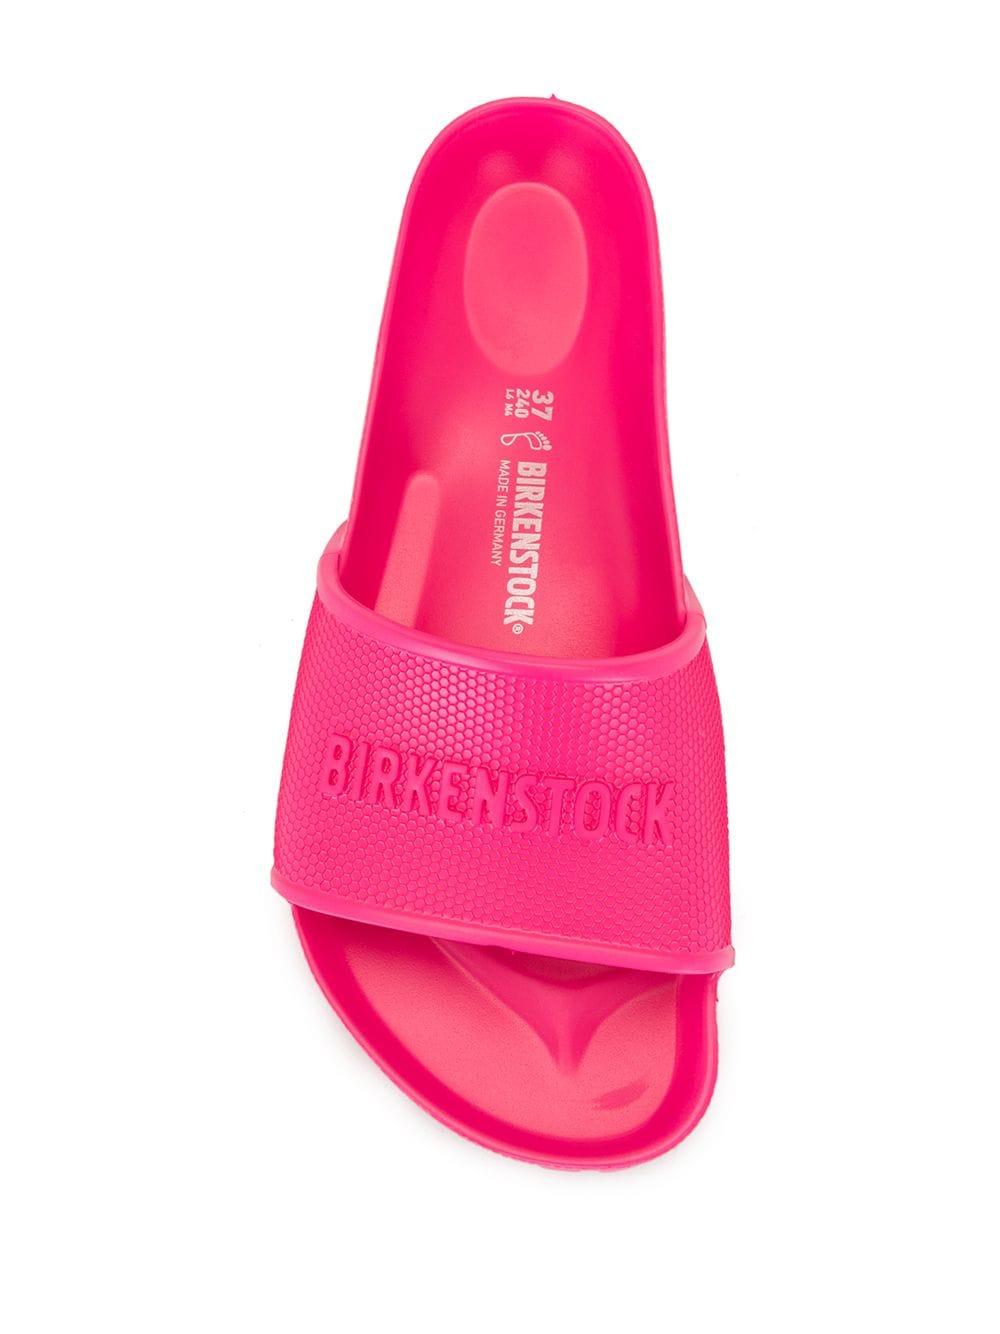 Birkenstock Barbados Eva Slides in Pink | Lyst